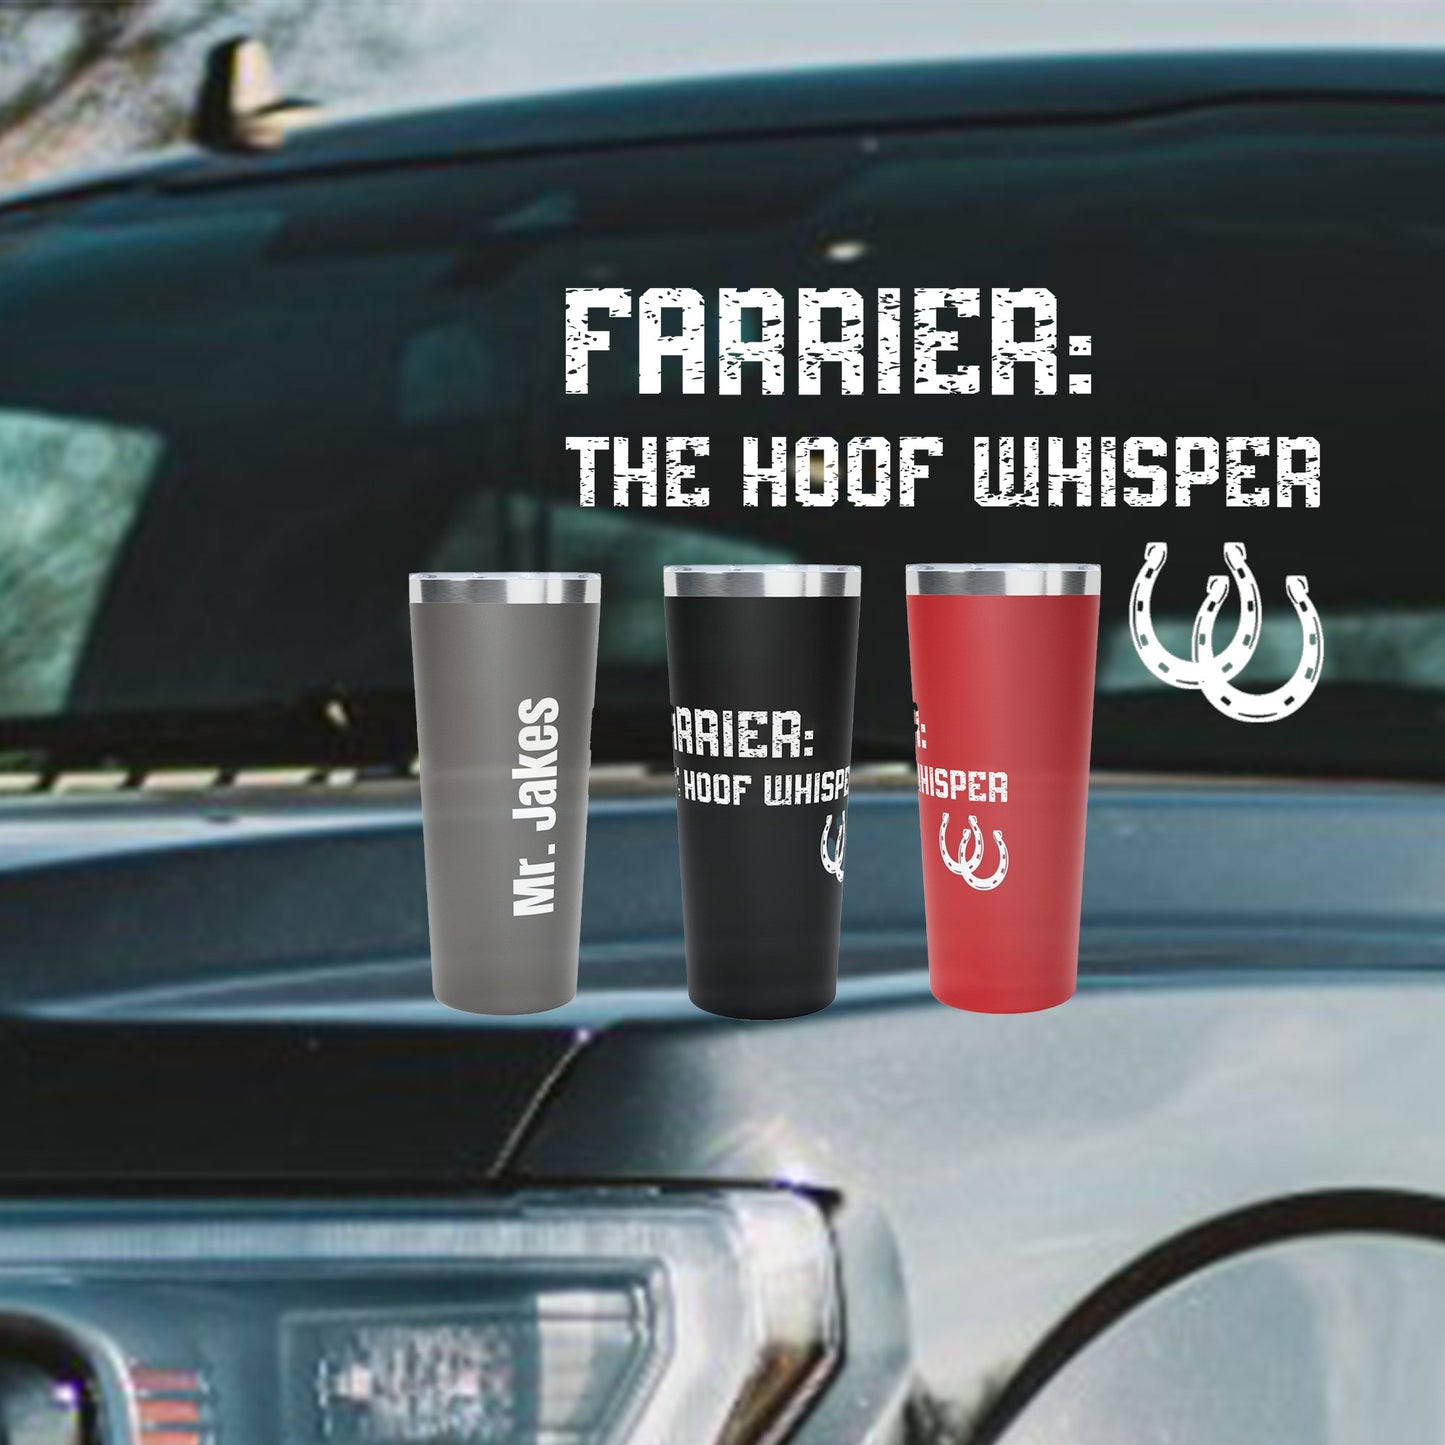 Professional Farrier 22 oz Personalized Tumbler, The Hoof Whisperer, Horseshoer Mug - FlooredByArt